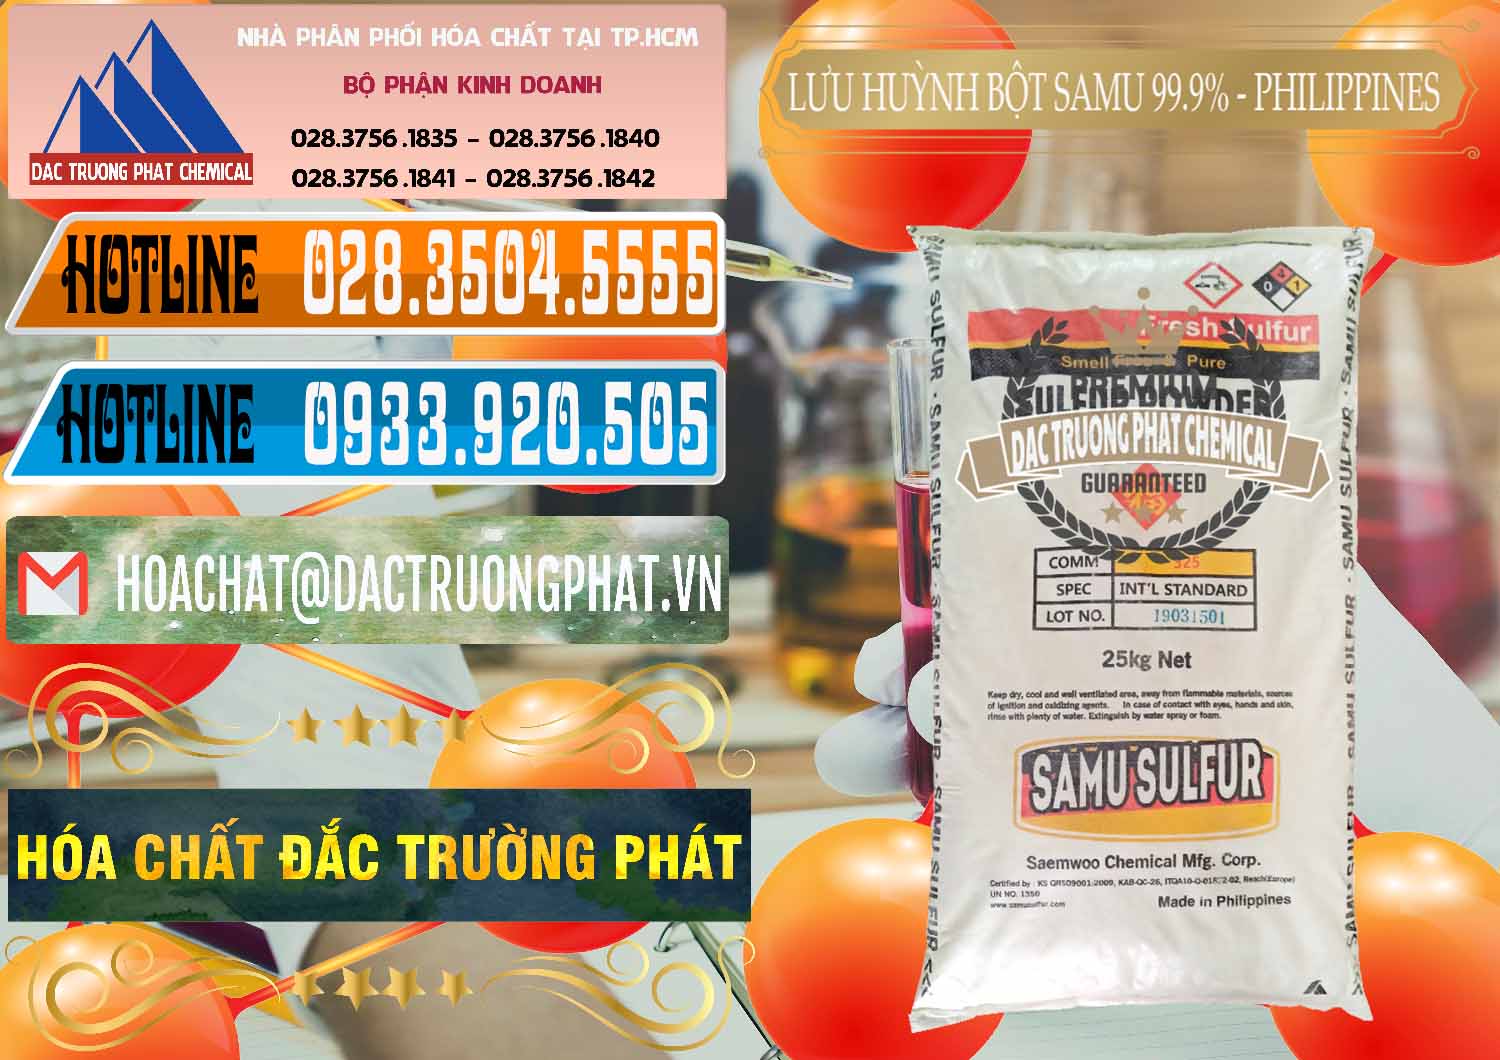 Cty bán & cung ứng Lưu huỳnh Bột - Sulfur Powder Samu Philippines - 0201 - Cty chuyên phân phối & nhập khẩu hóa chất tại TP.HCM - stmp.net